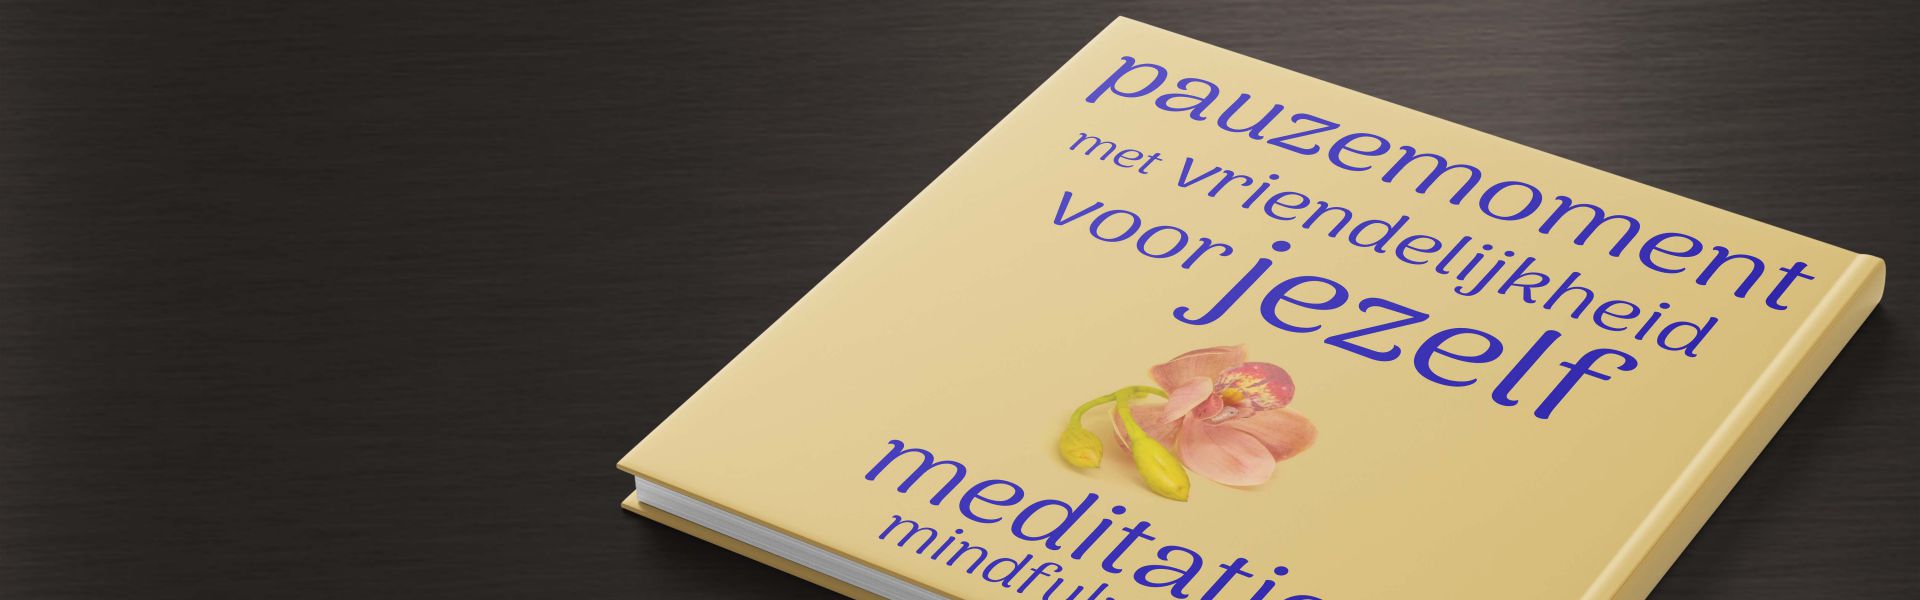 Pauzemoment met vriendelijkheid voor jezelf: mindfulness meditatie